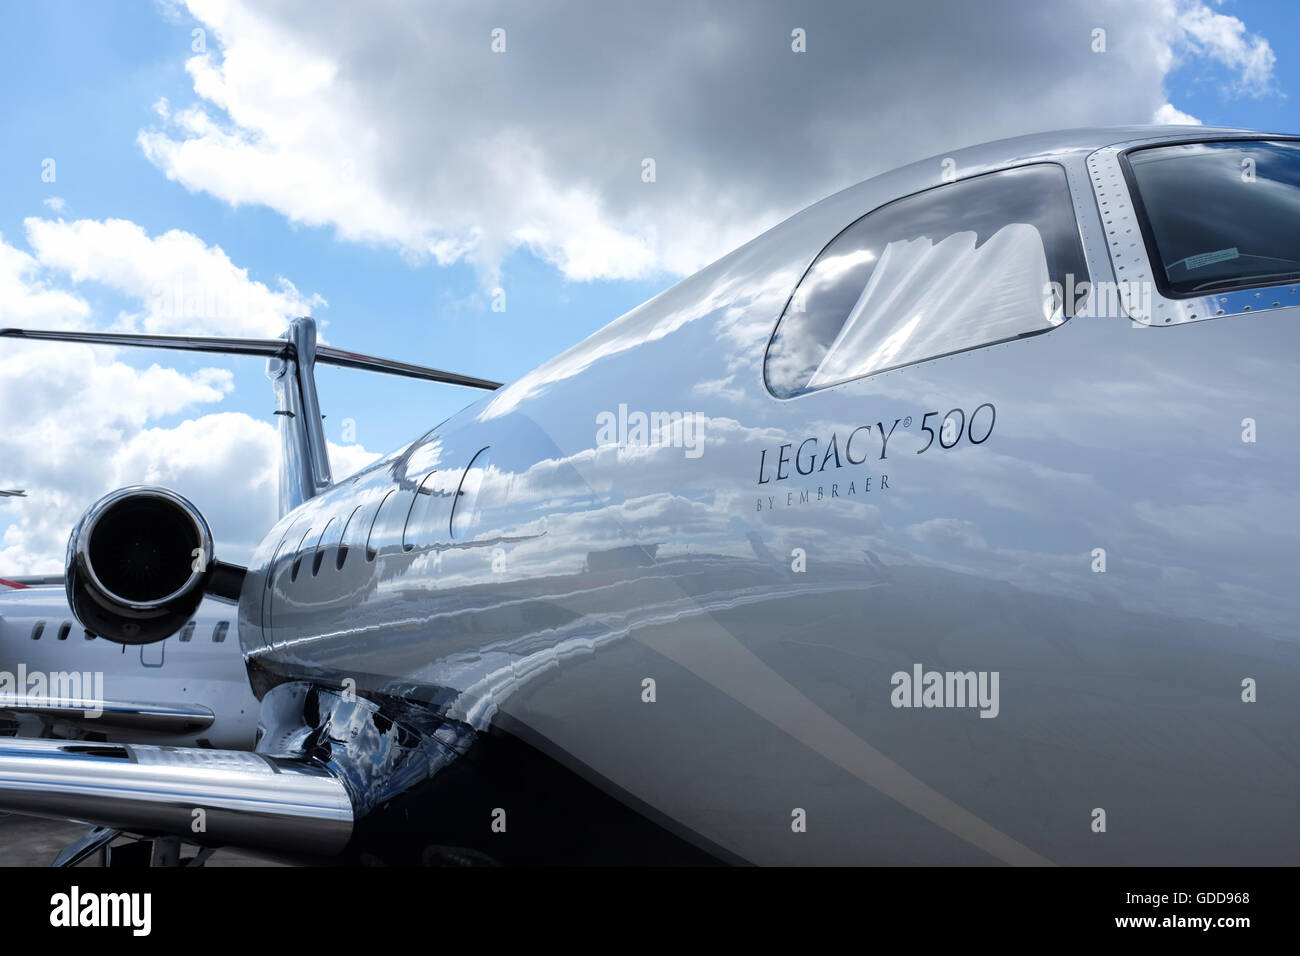 Le jet d'affaires Legacy 500 par Embraer. Banque D'Images